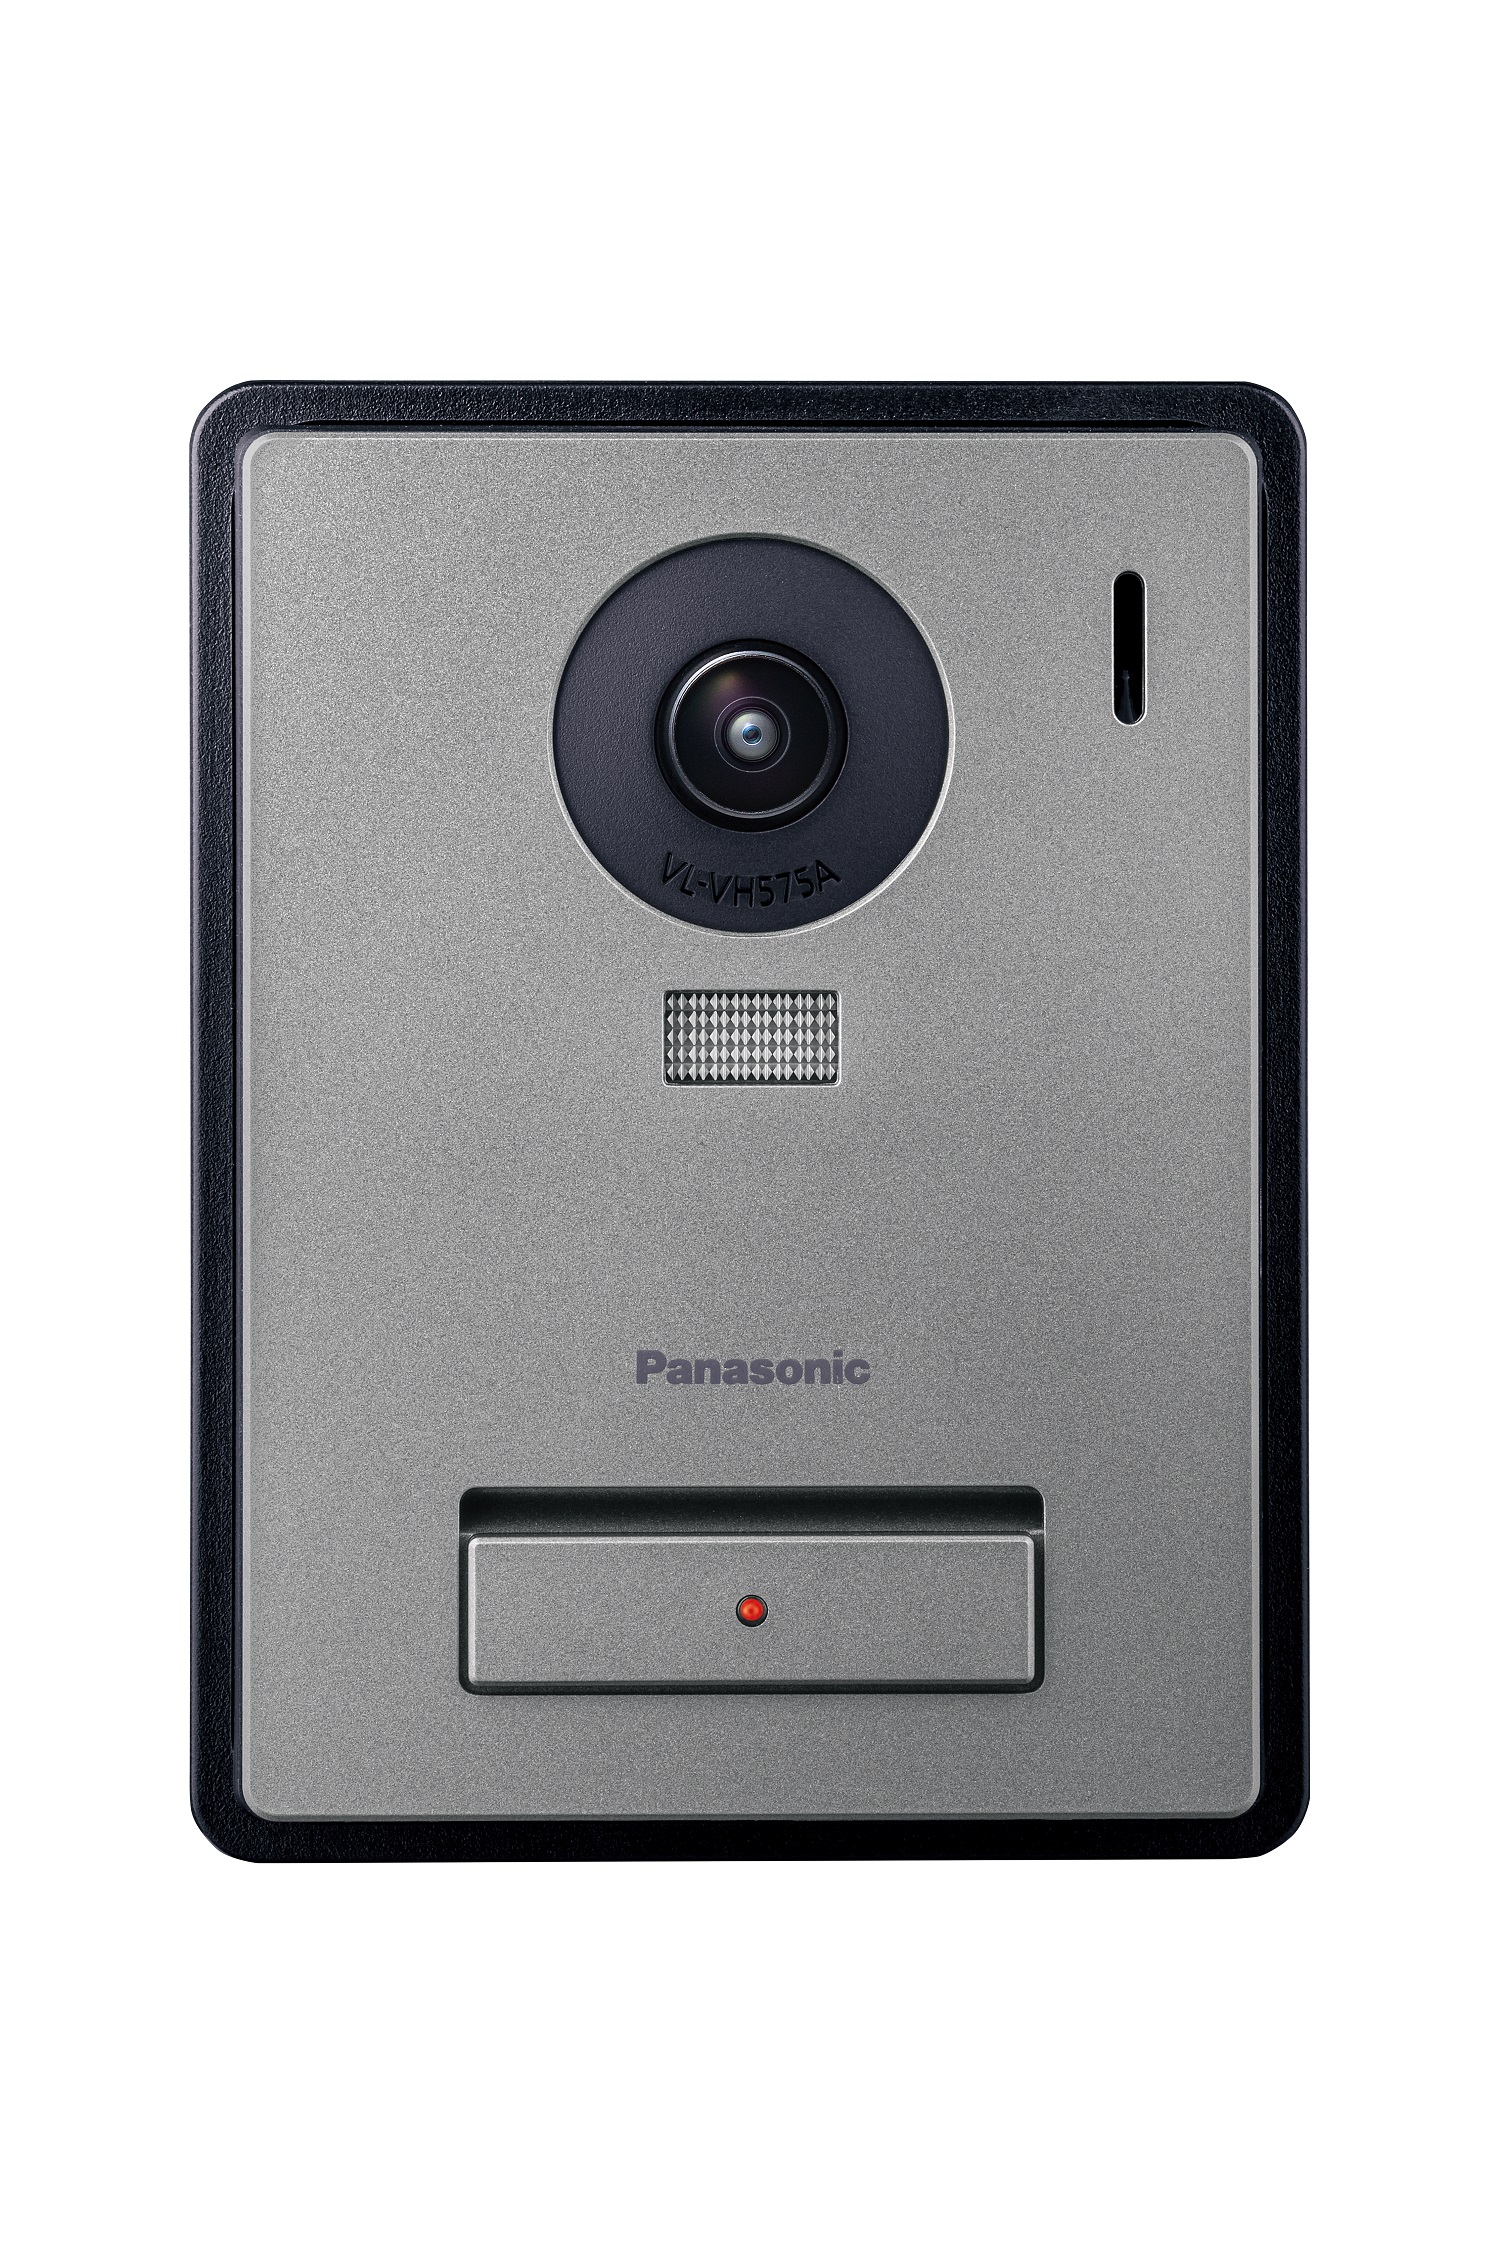 日本代理店正規品 Panasonic パナソニック カラーカメラ玄関子機